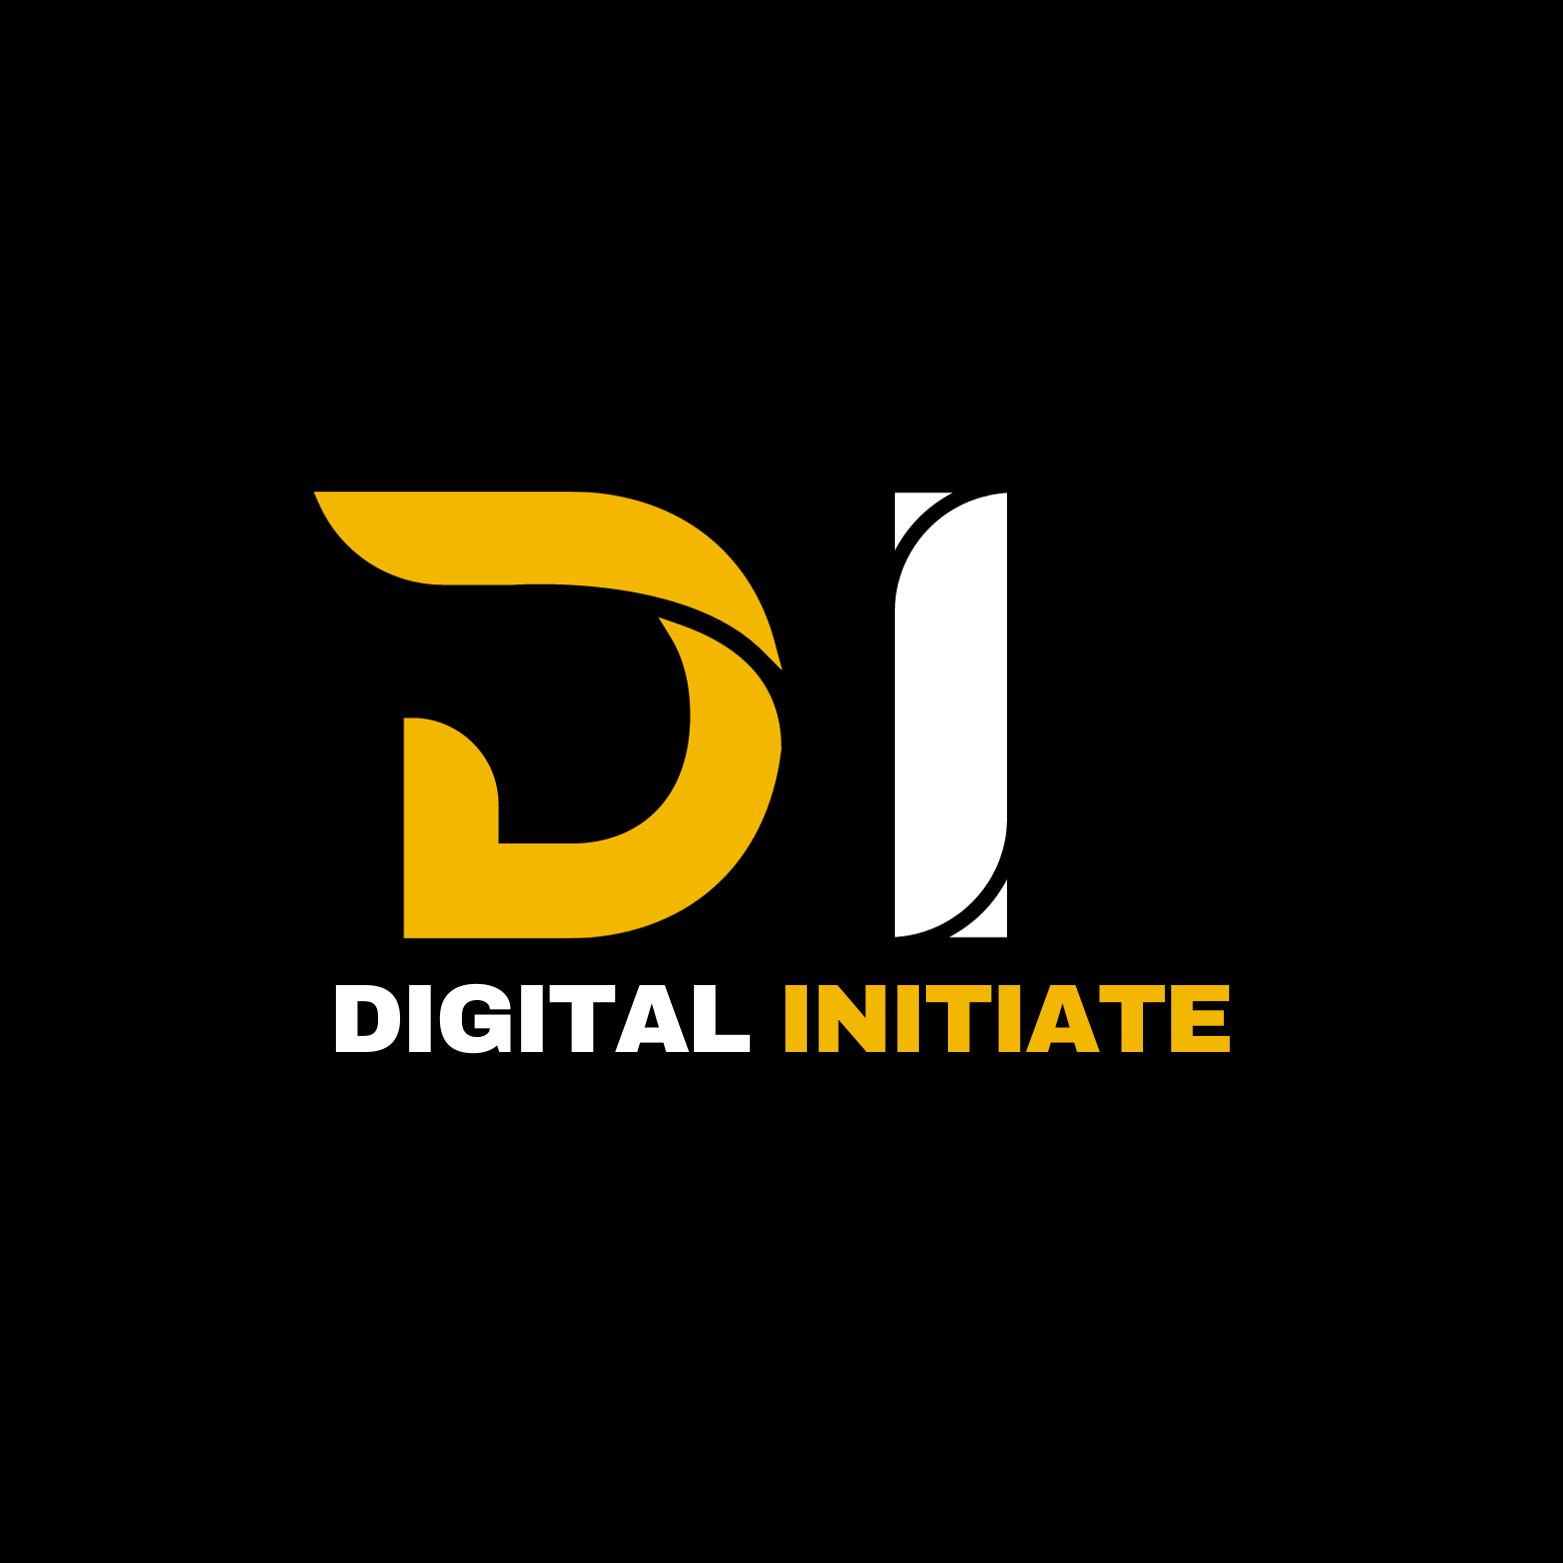 Digital Initiate